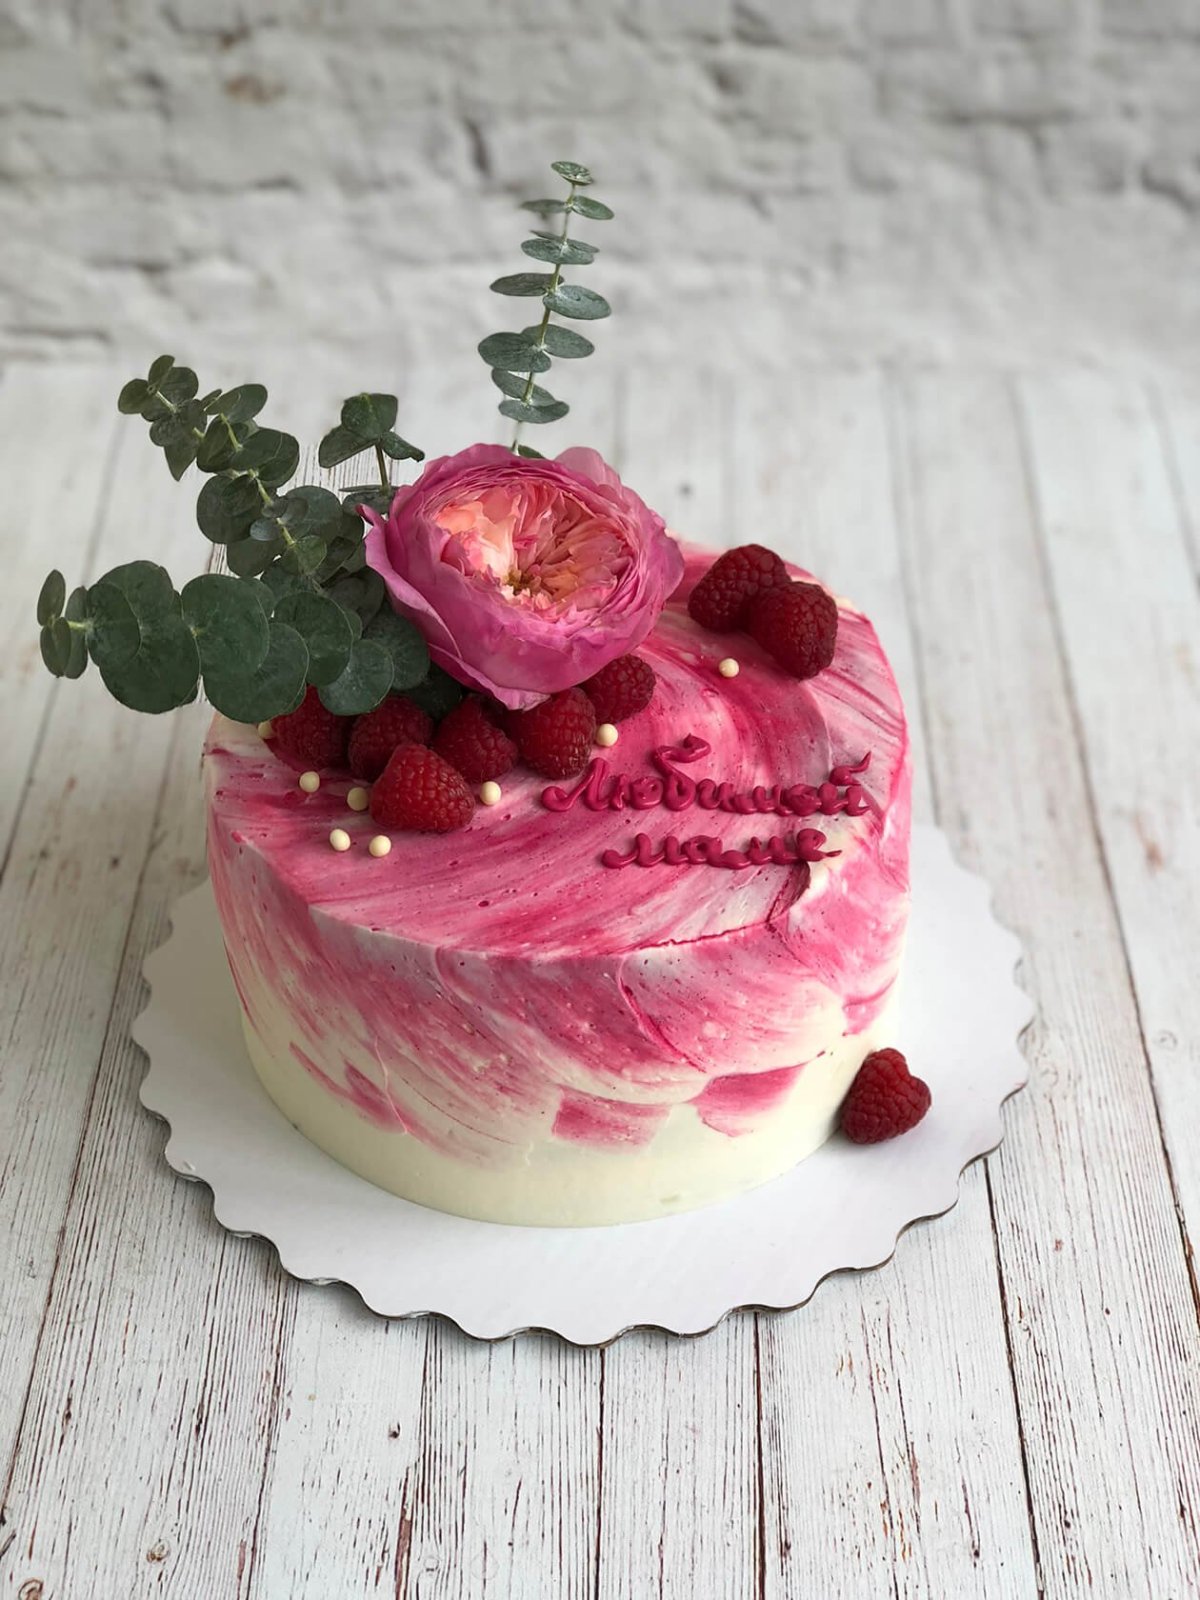 Торт с живыми цветами и ягодами